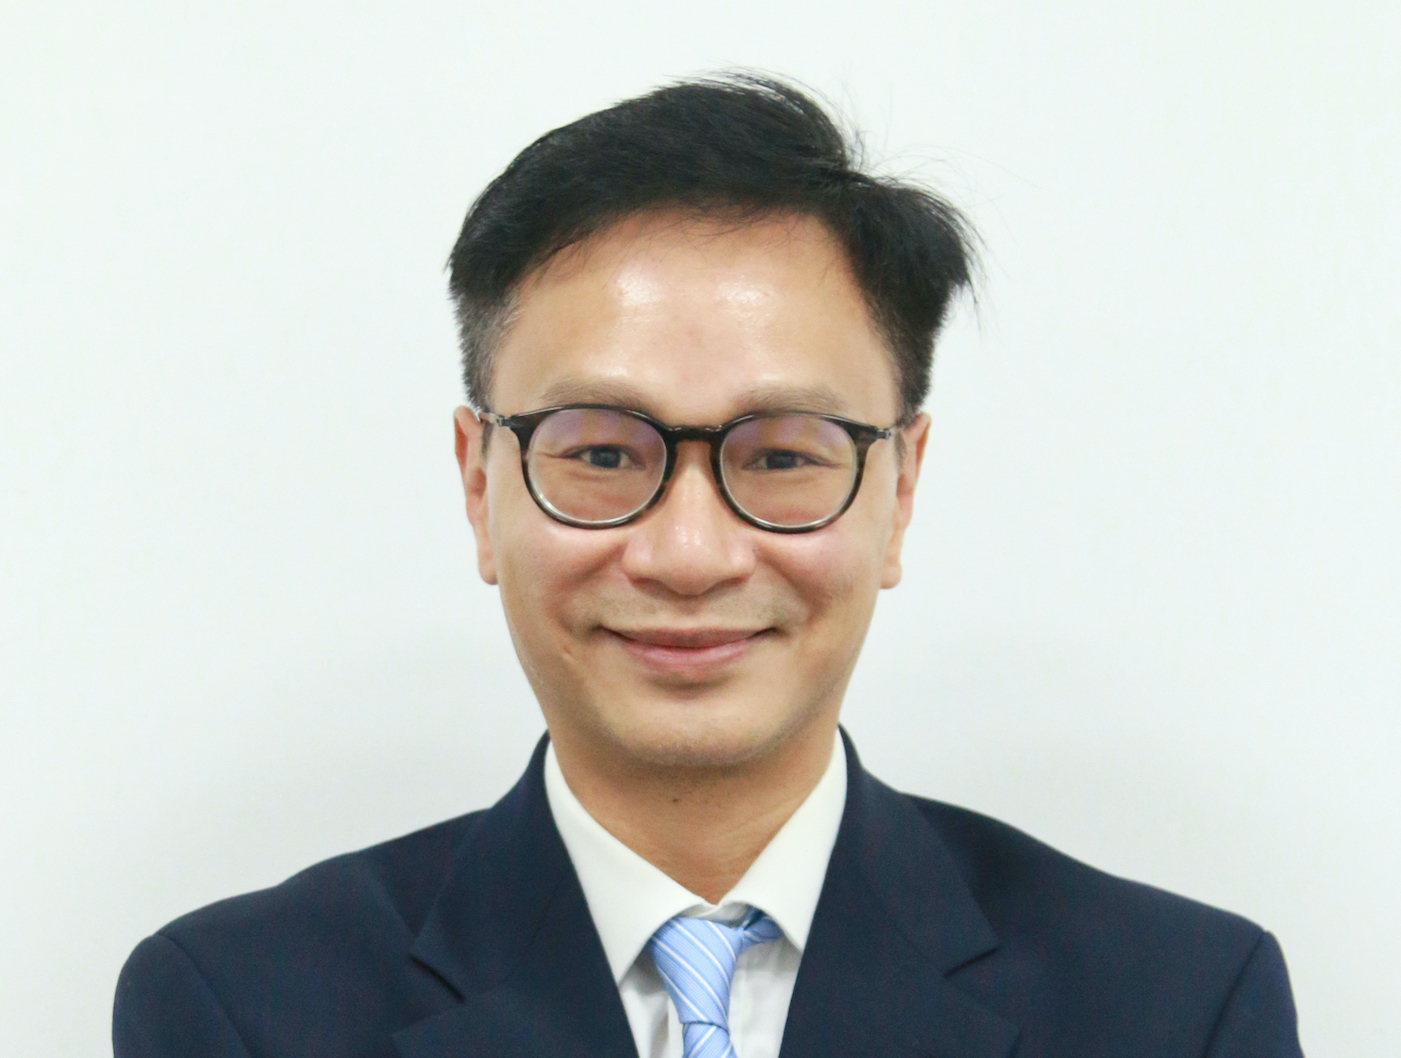 “Đại học không tường” – đại học của tương lai, Tiến sĩ Lê Vũ Quân – Giám đốc Chương trình Quản trị Kinh doanh